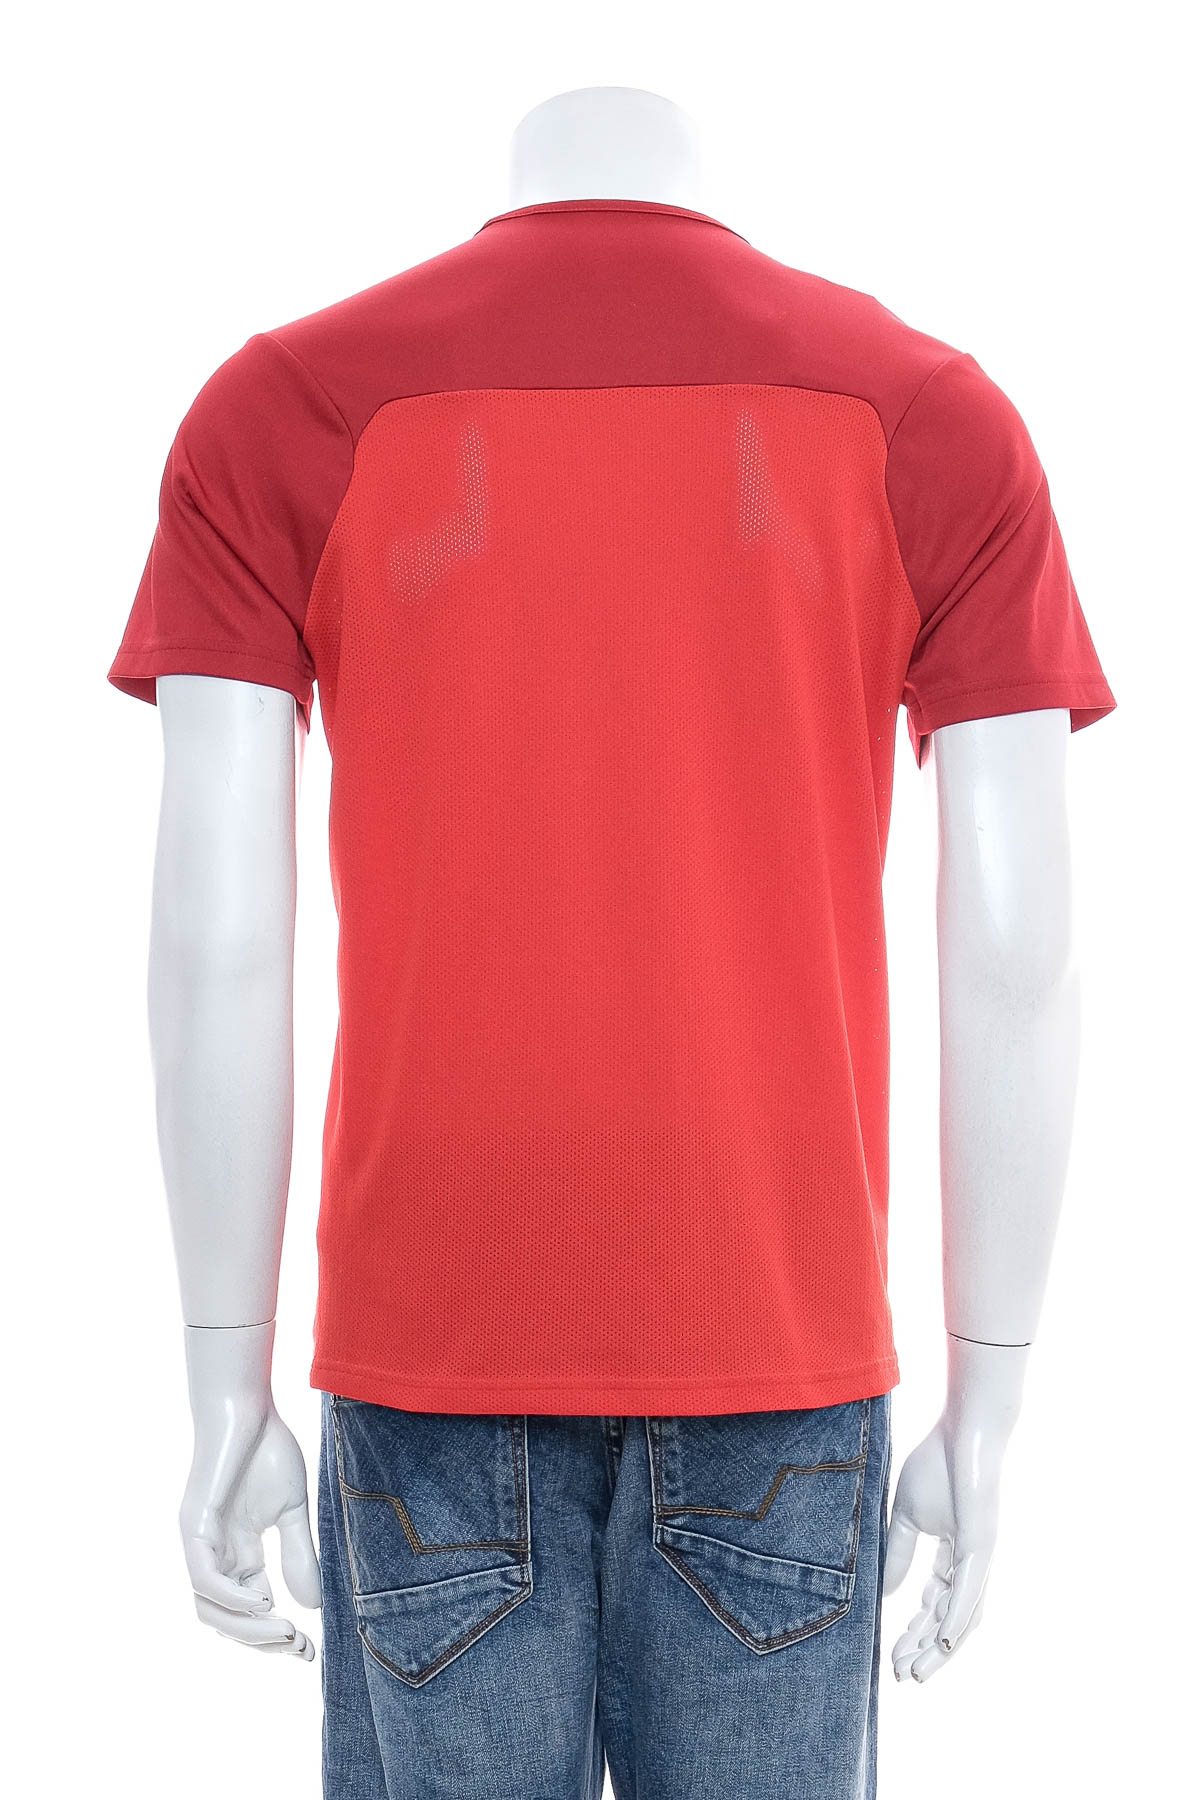 Men's T-shirt - PUMA - 1